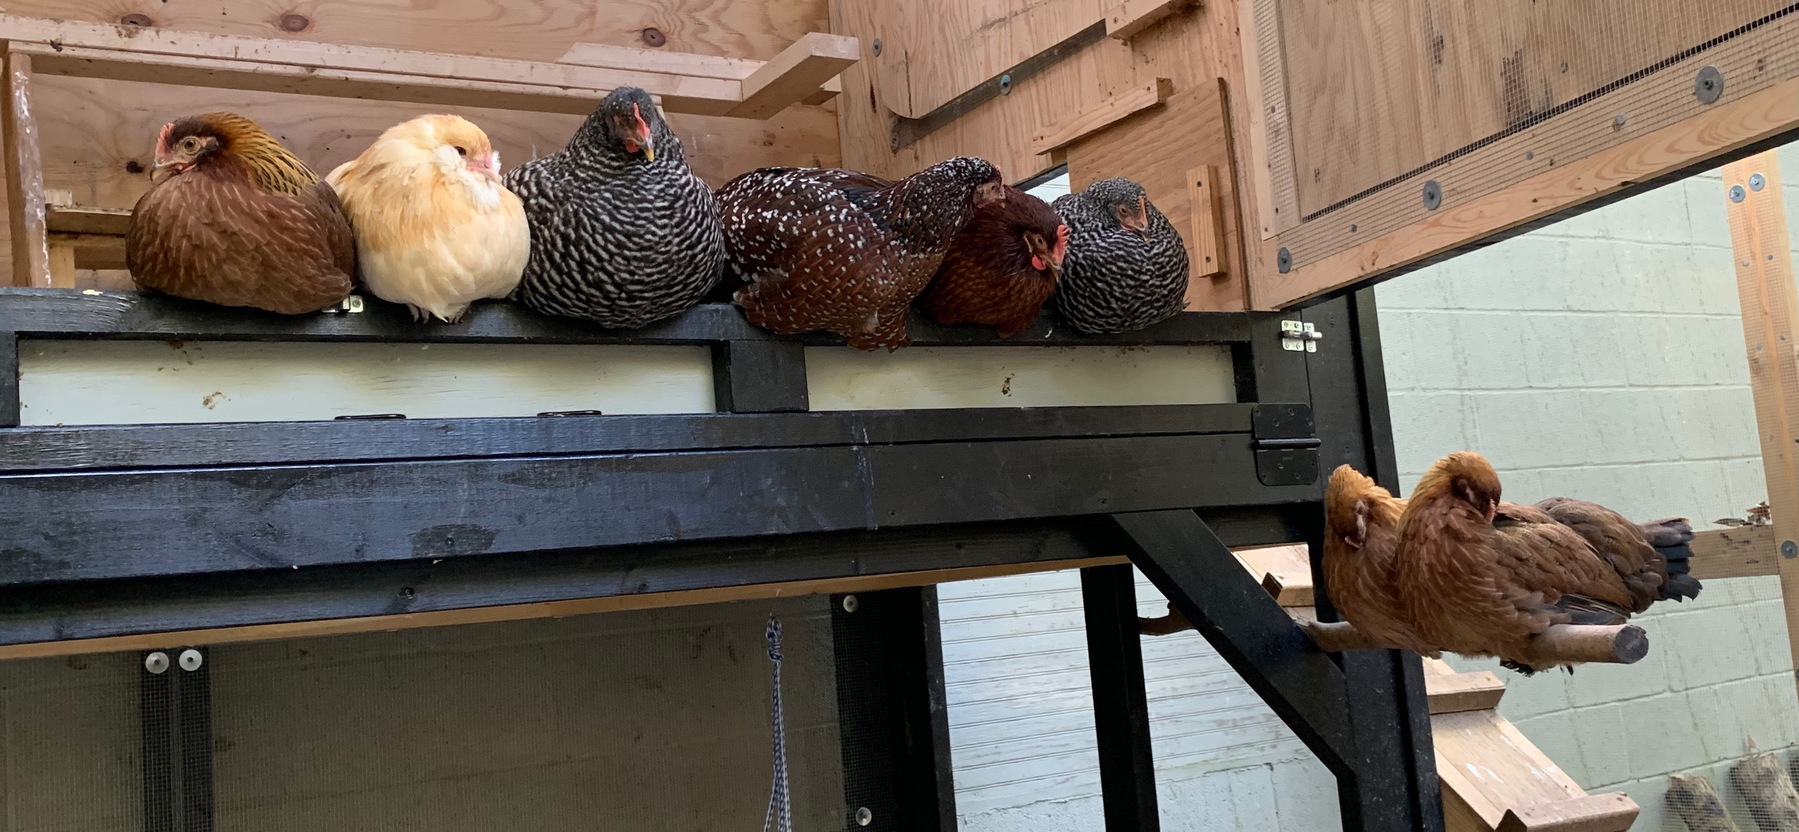 8 hens roosting in their coop